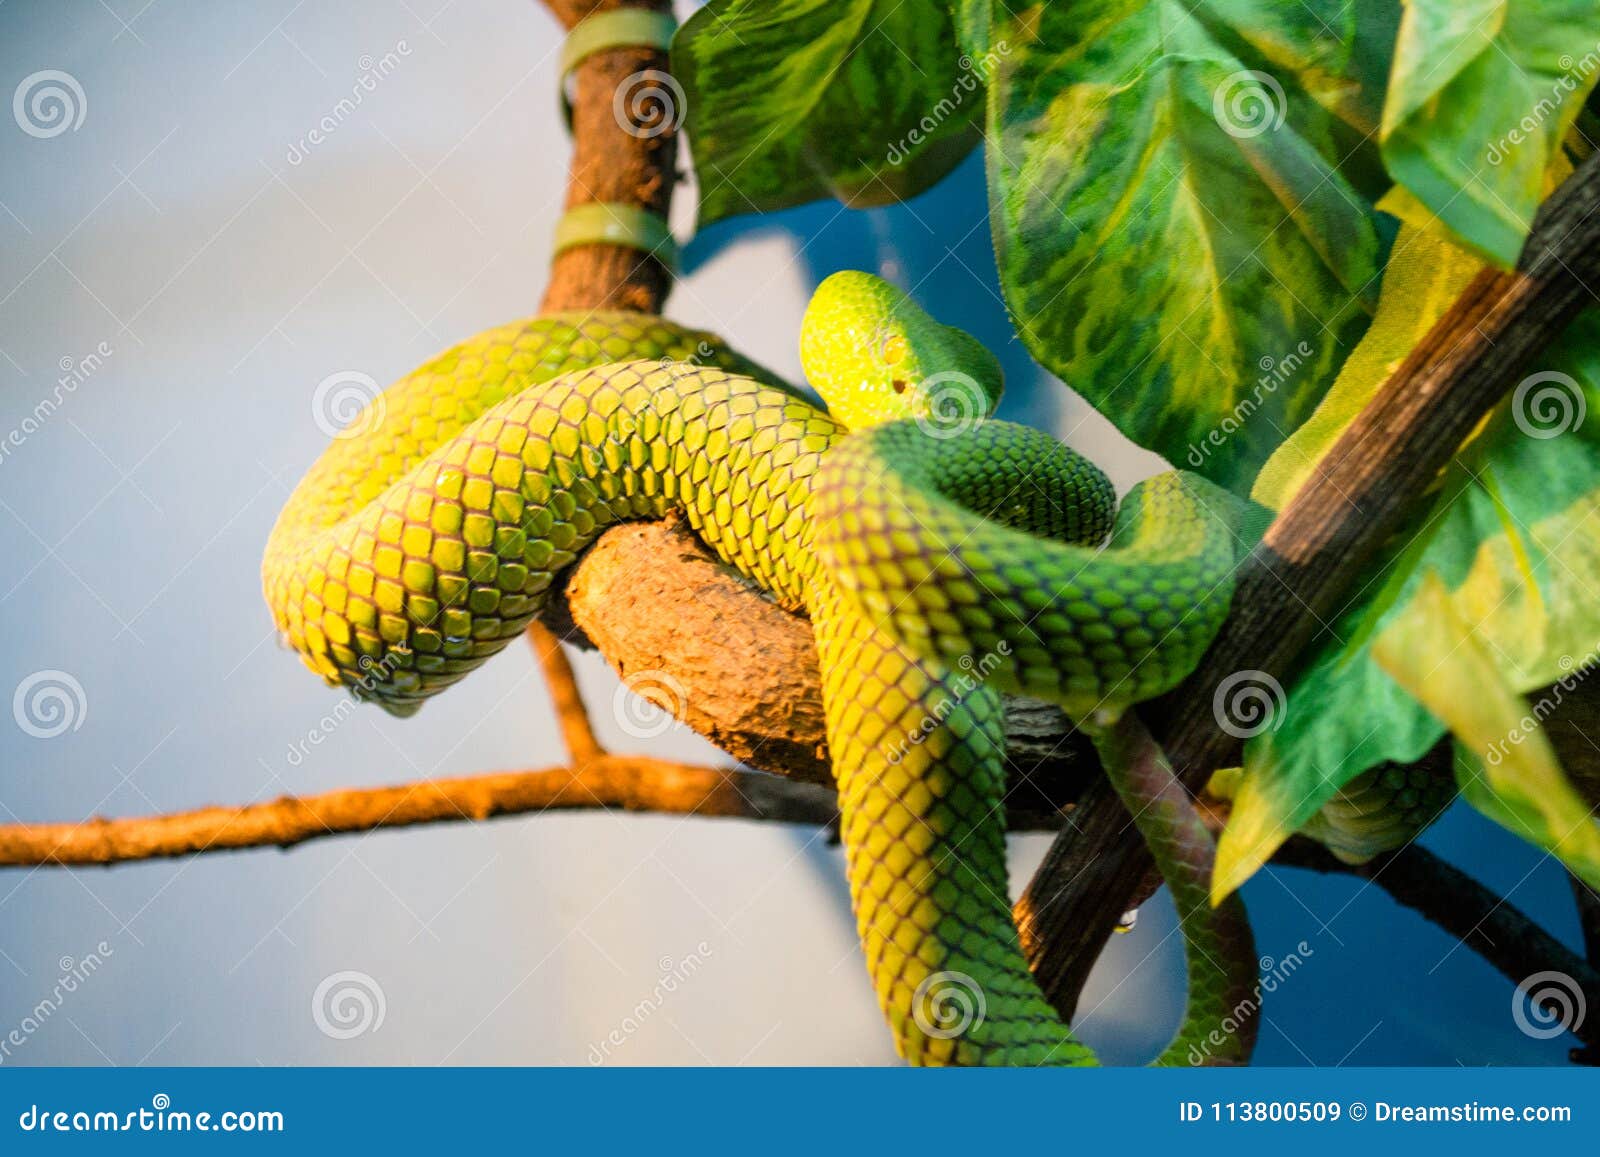 照片毒翠青蛇， koufa. 白有腿的koufa，热带蛇，一条大翠青蛇，加法器，一只鳞状爬行动物